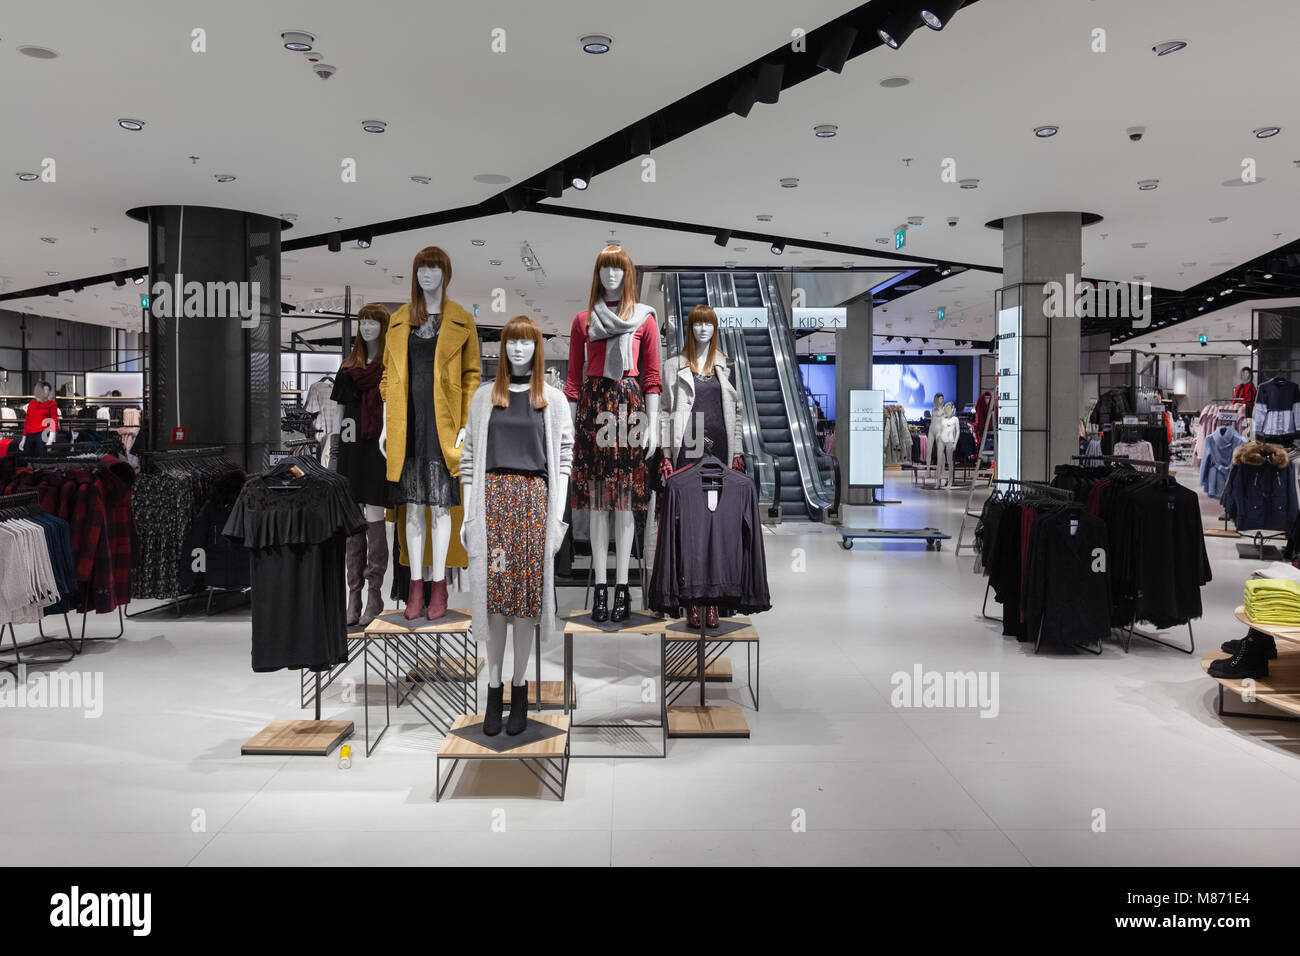 Mall interni - un grande negozio di abbigliamento con i vestiti e manichini sul display Foto Stock